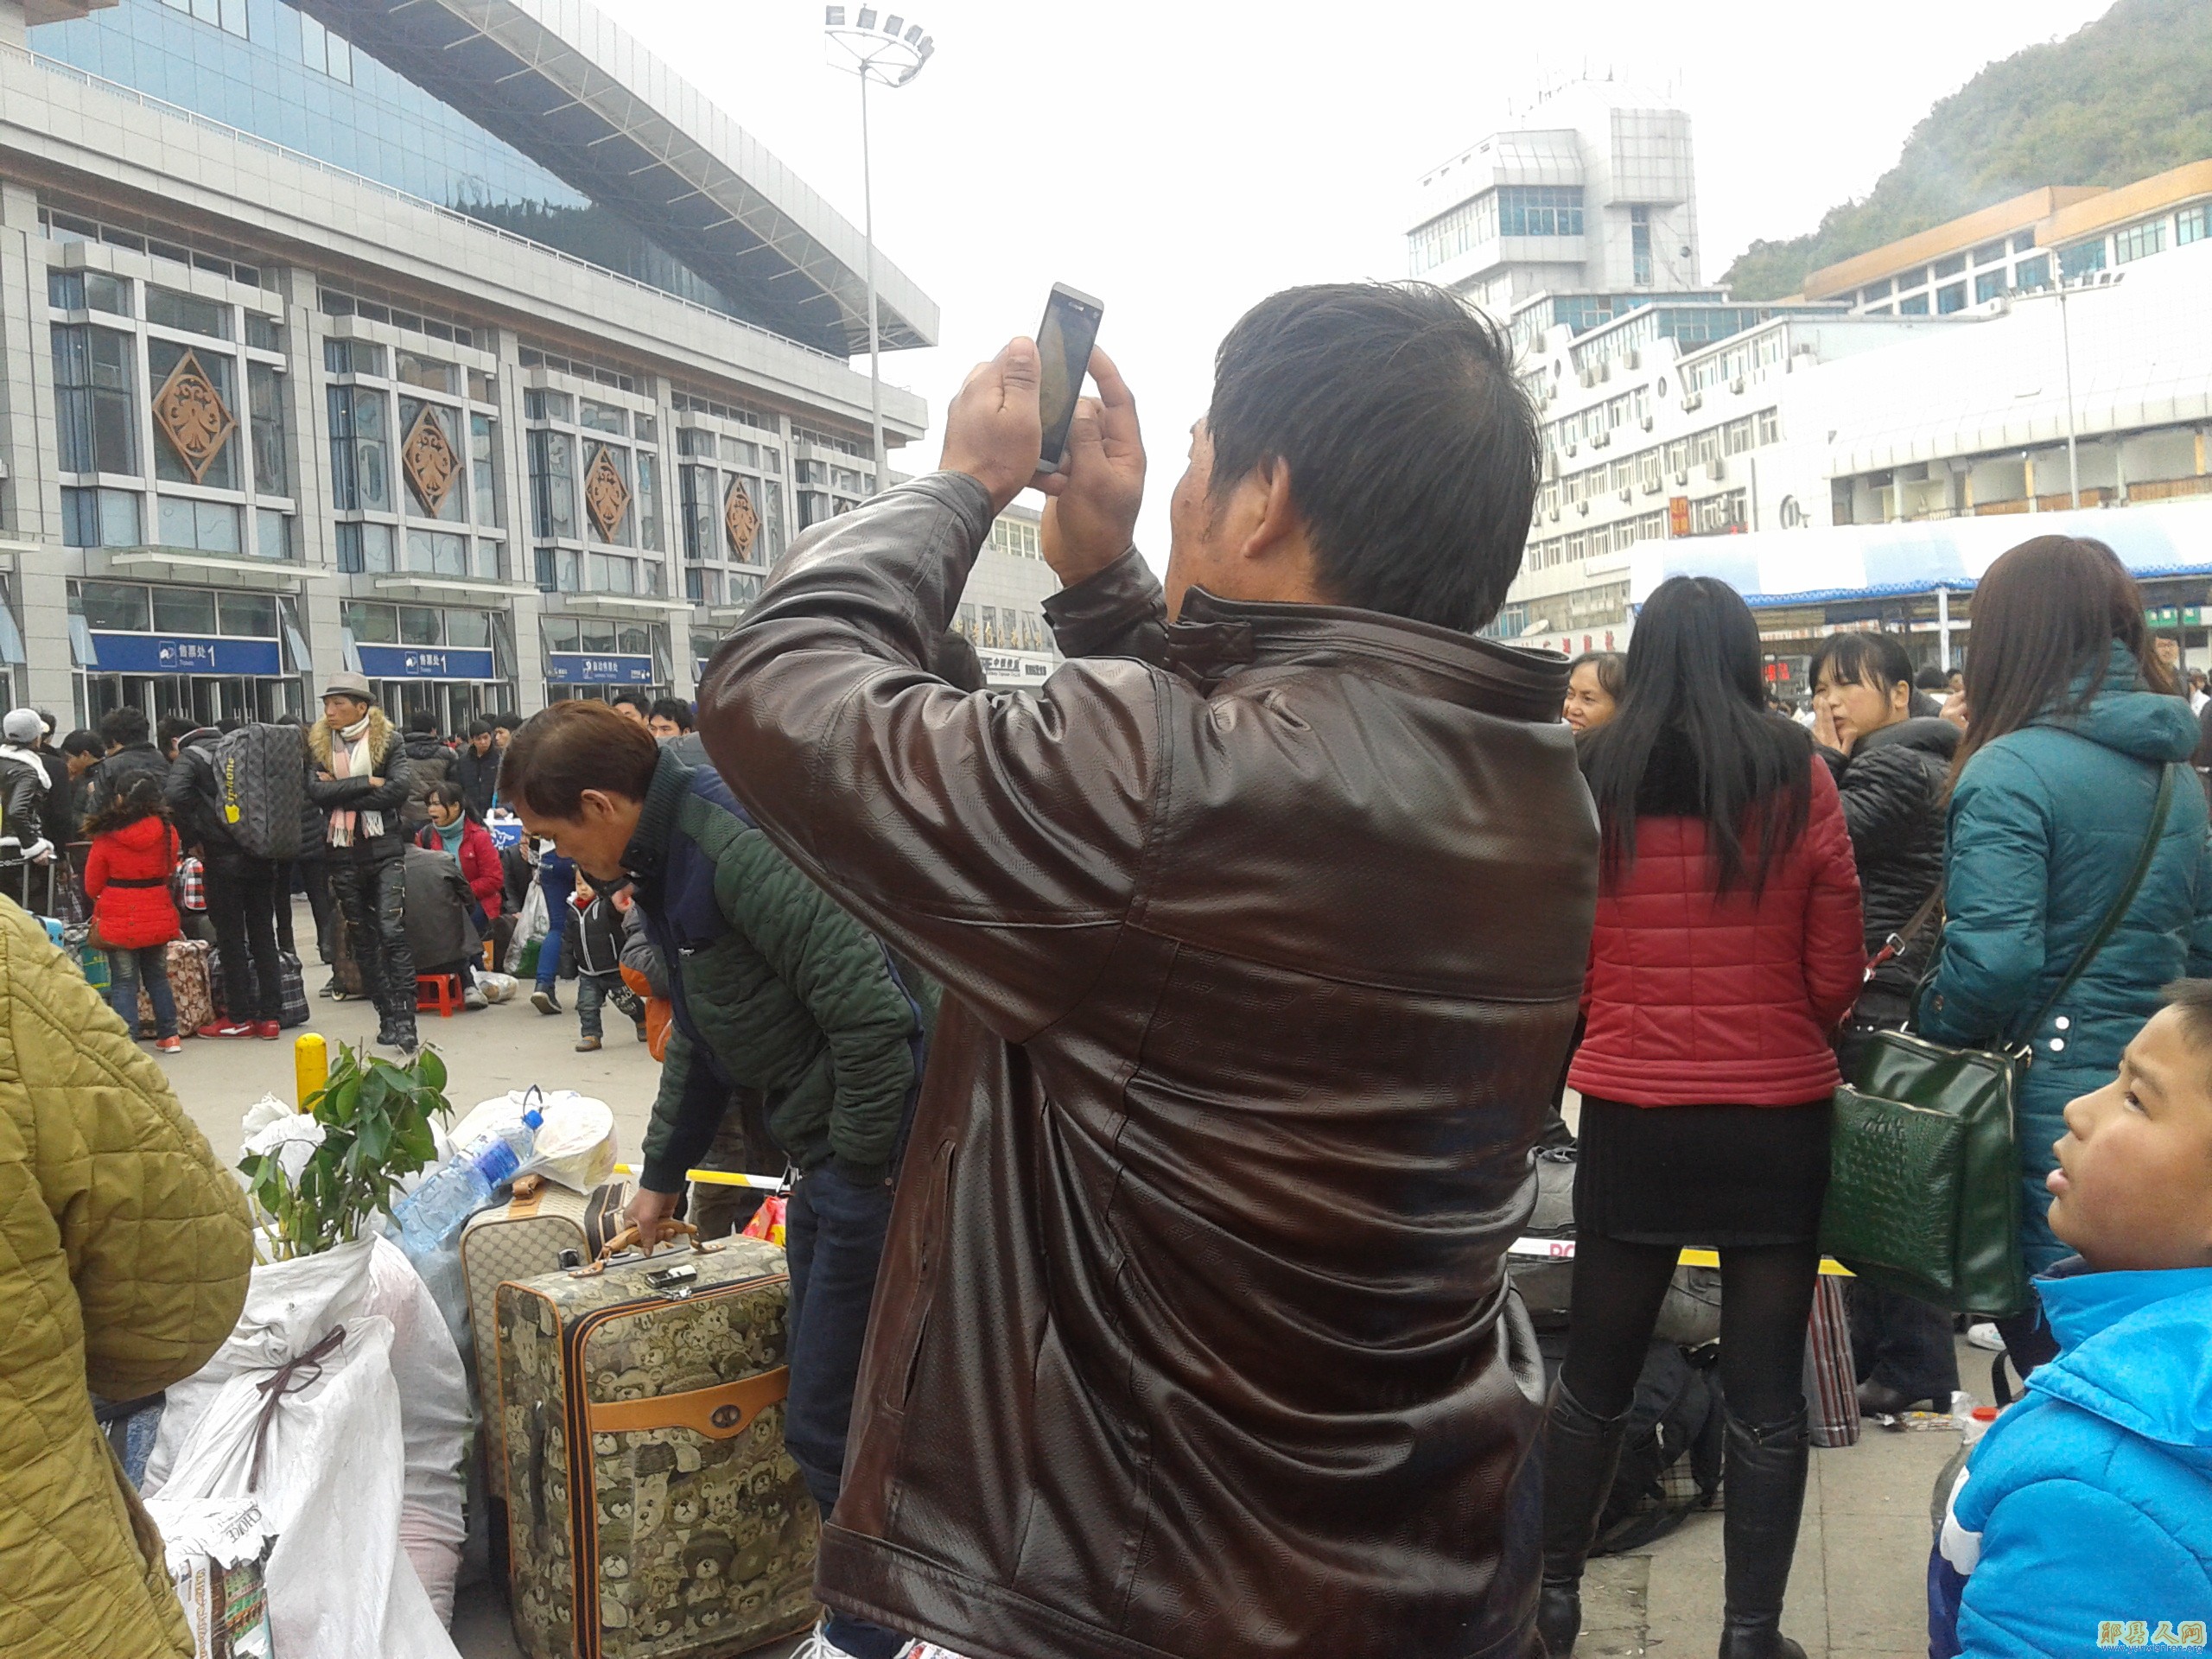 贵阳火车站，人多很杂乱。拍照不留恋，只盼快进站。